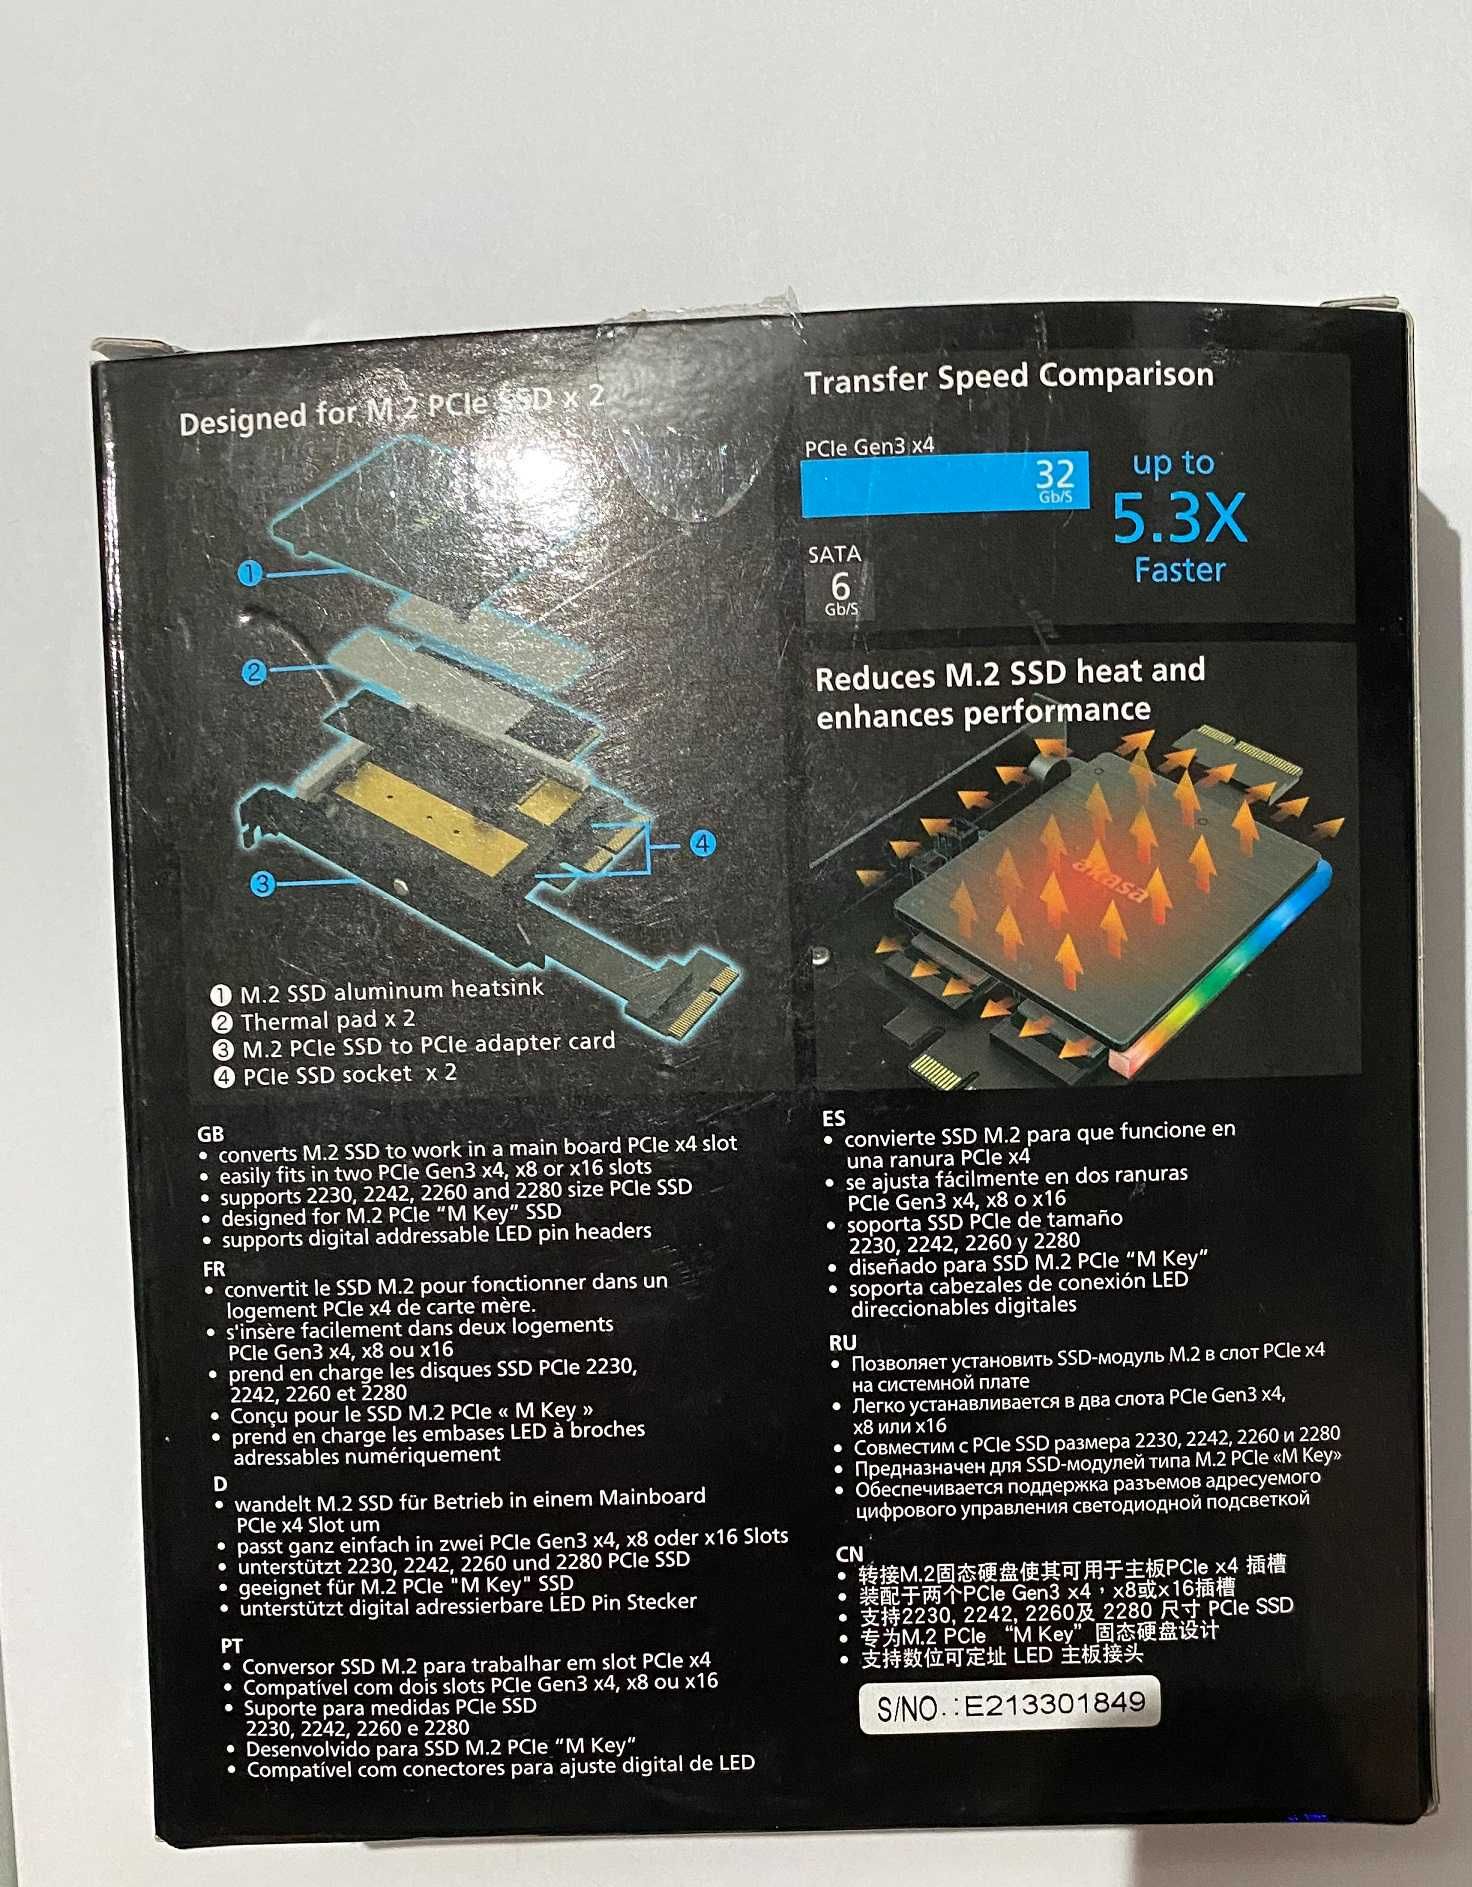 Adaptador Dual M.2 PCIe RGB LED com Cooler